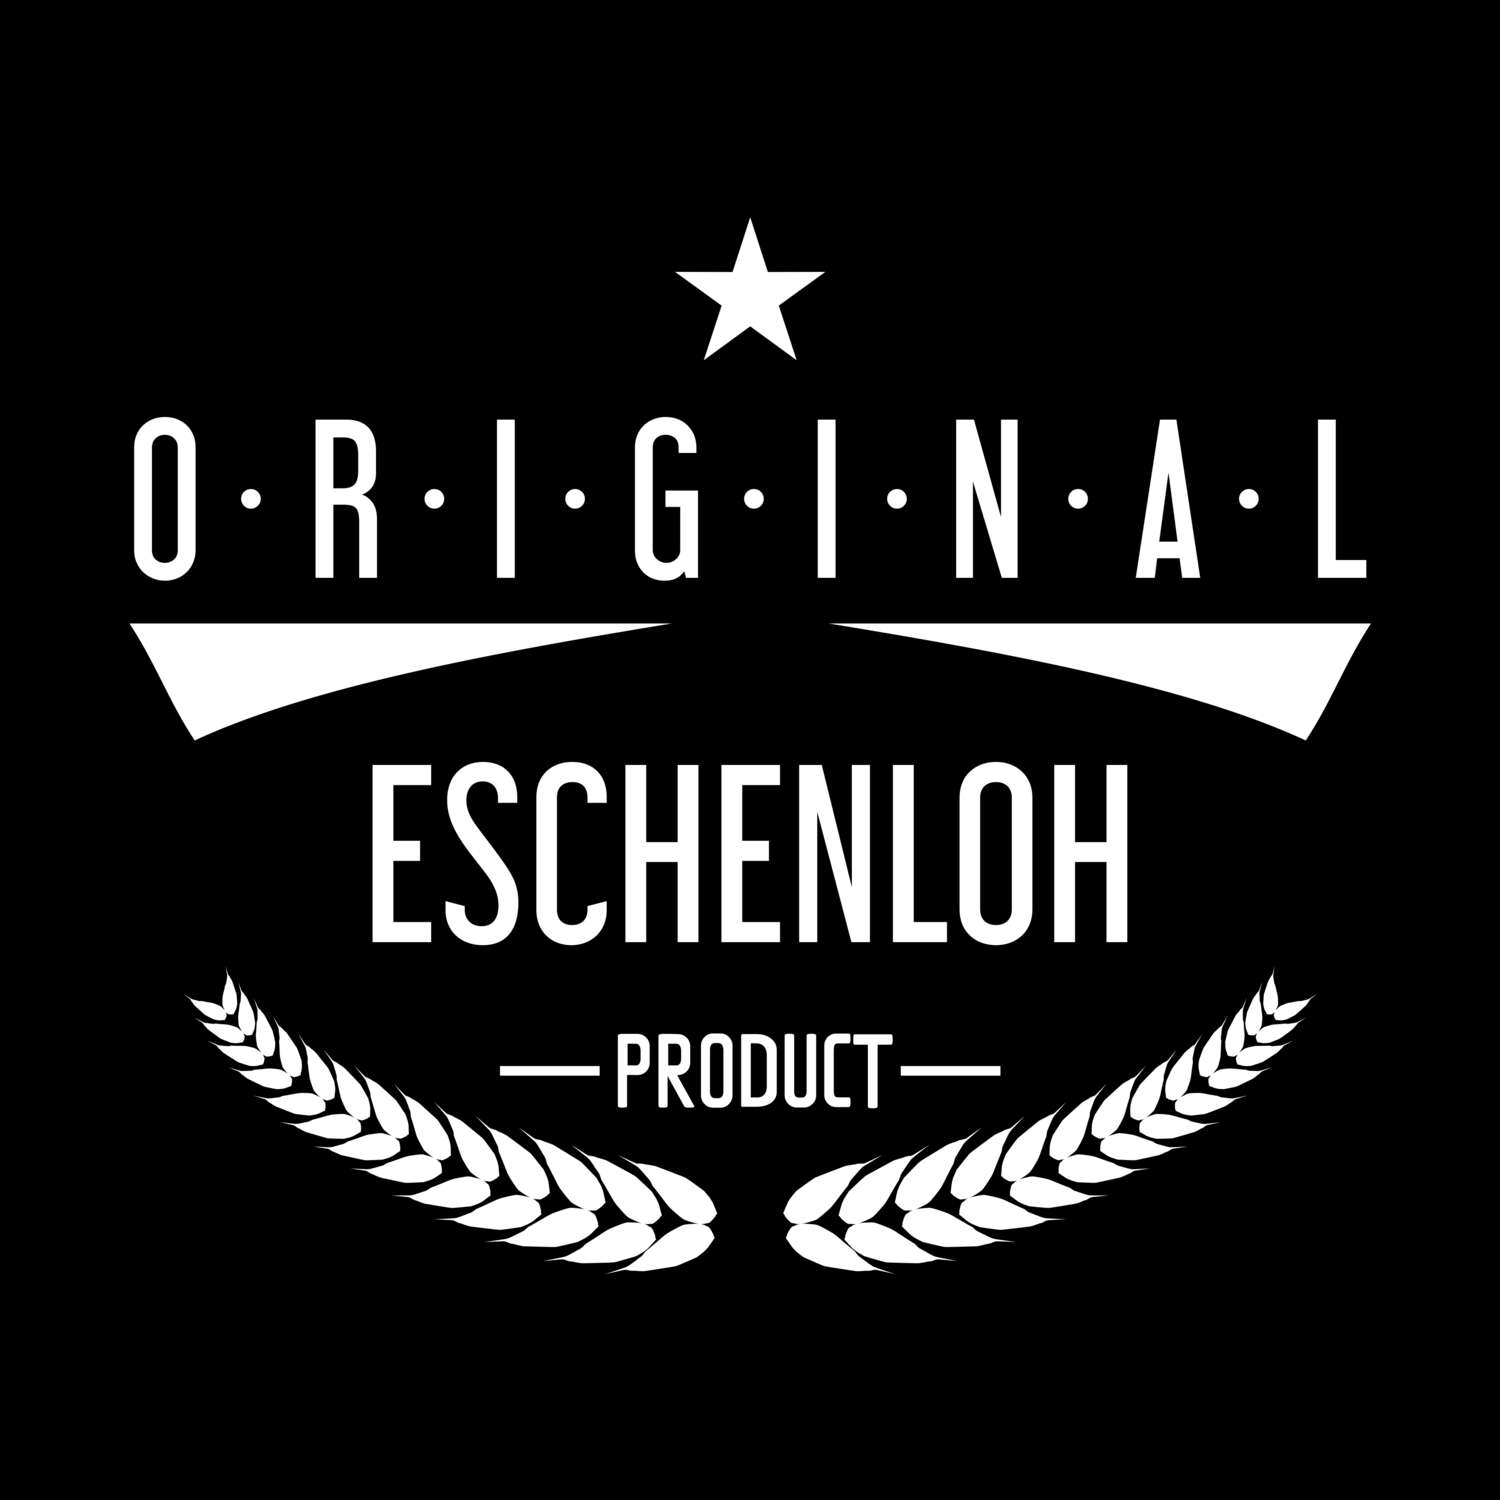 Eschenloh T-Shirt »Original Product«